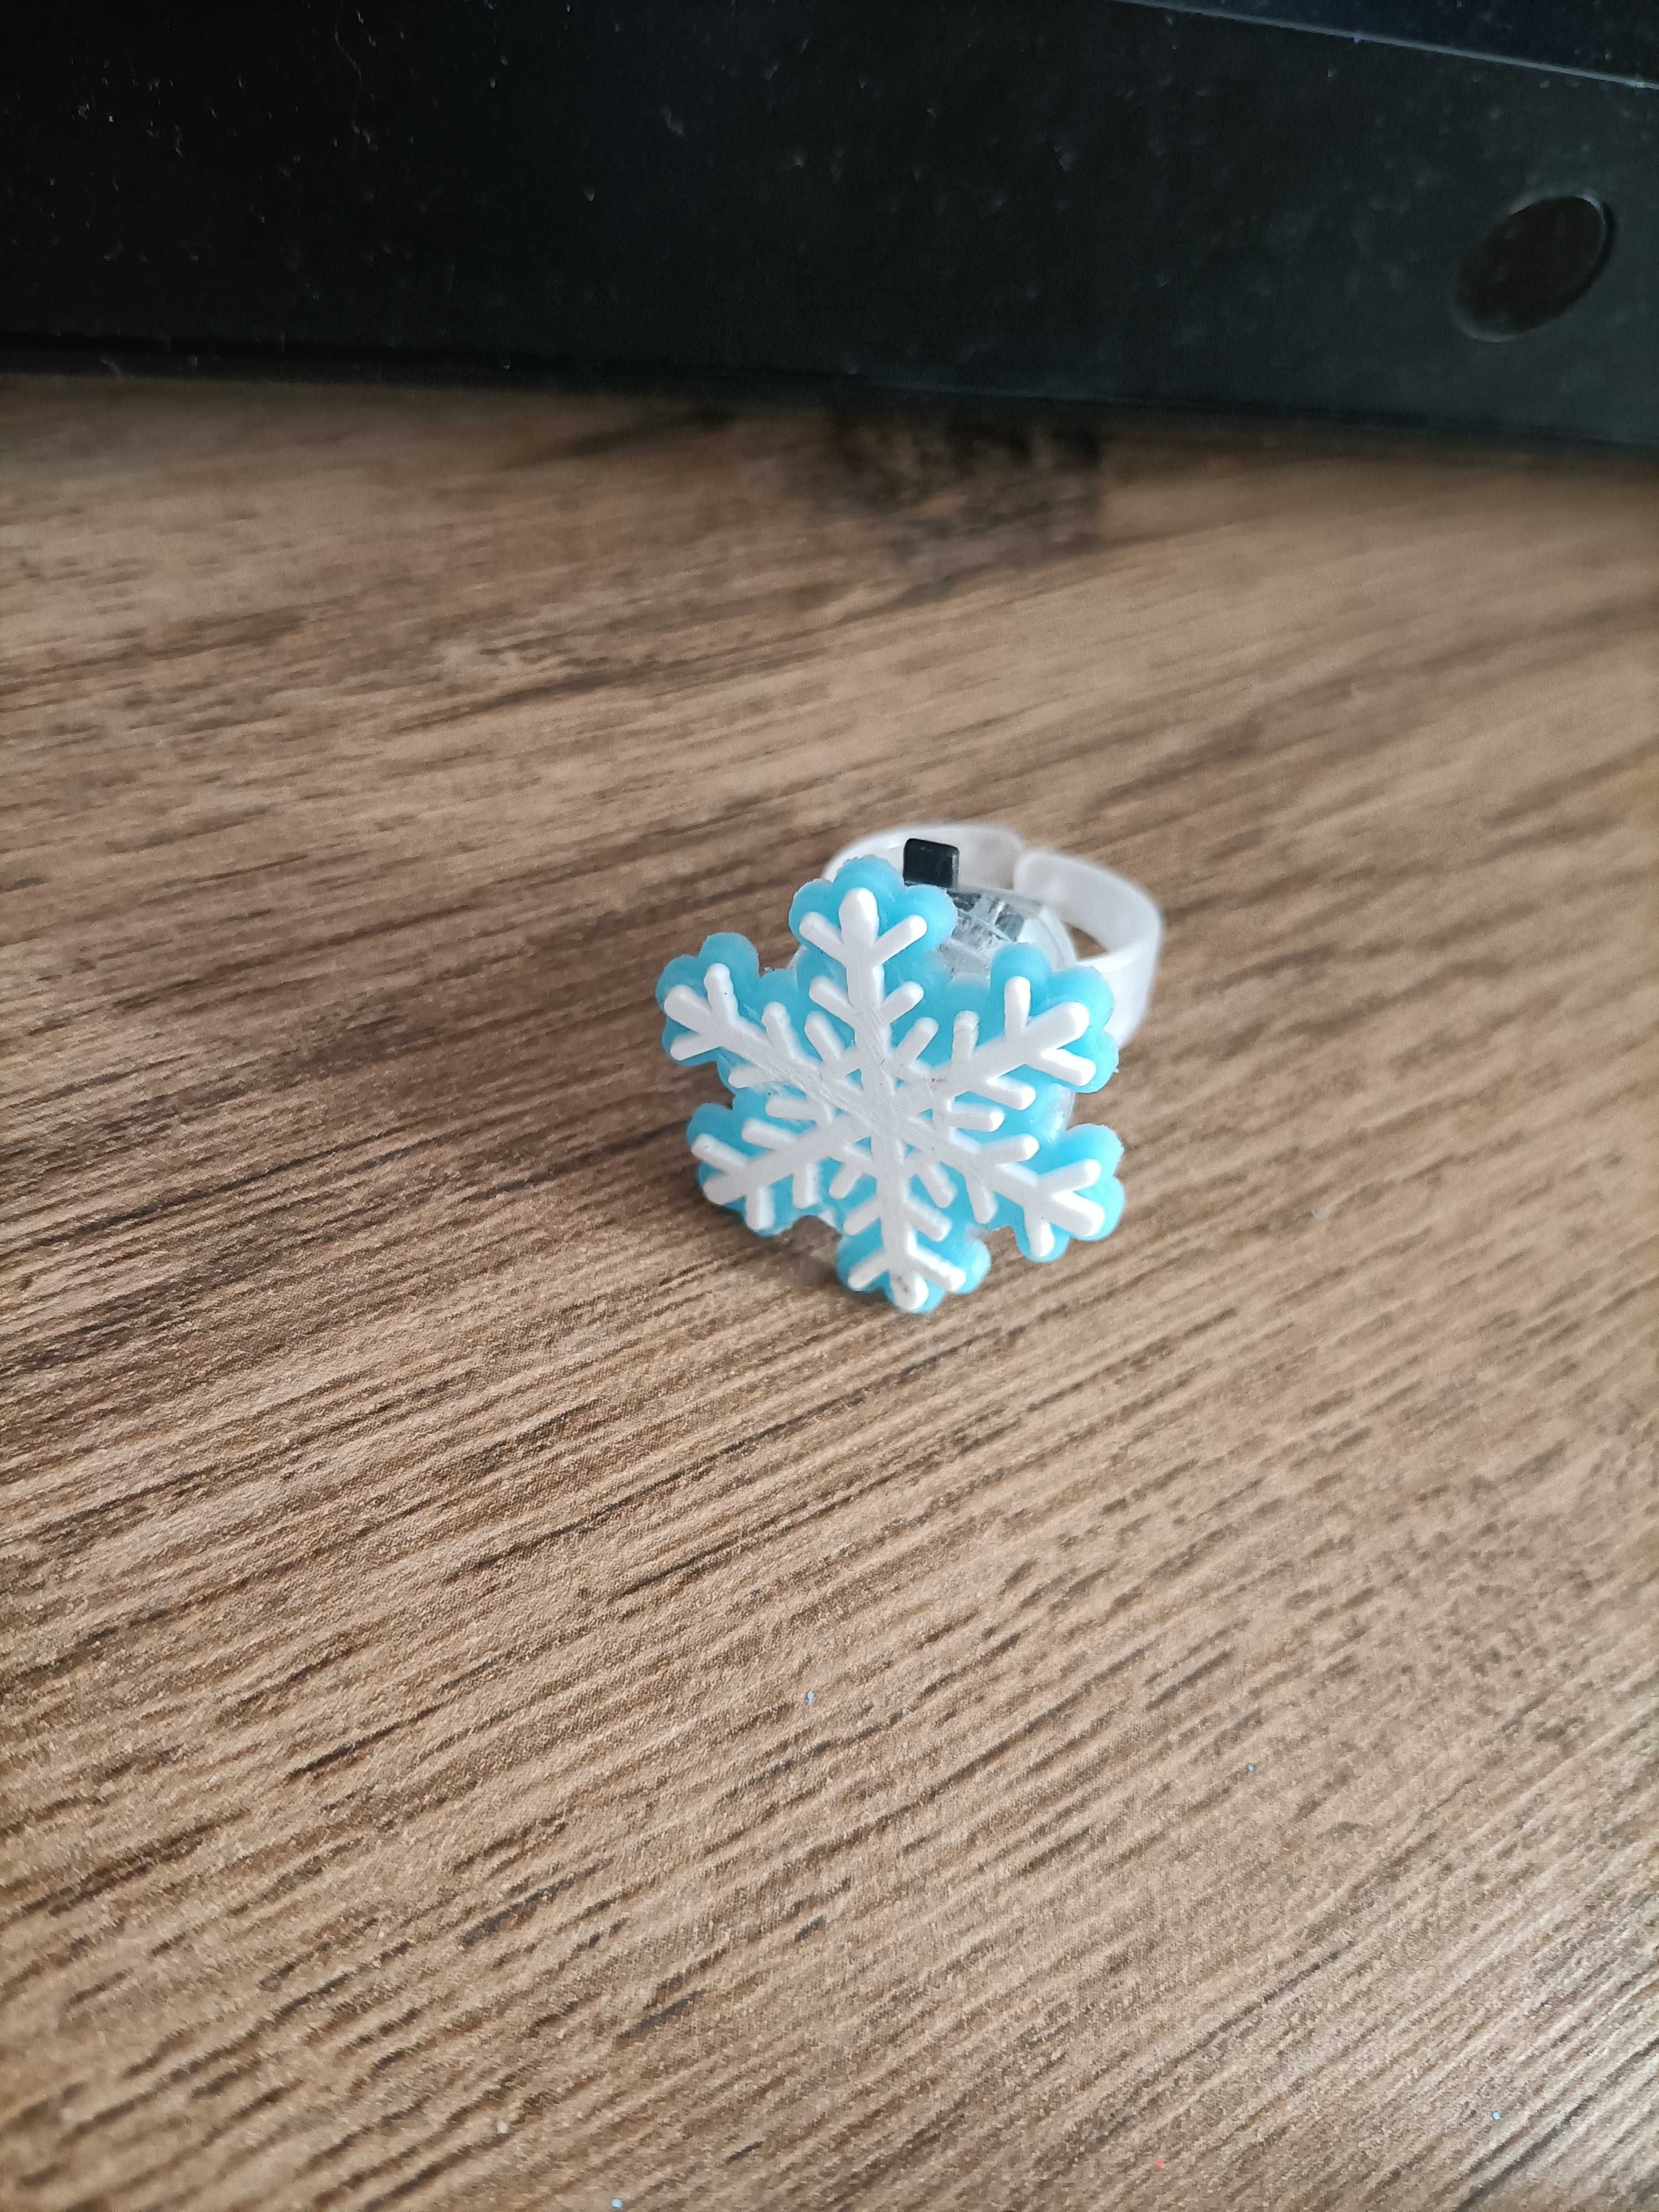 Pierścionek świąteczny płatek śniegu śnieżynka LED świecący